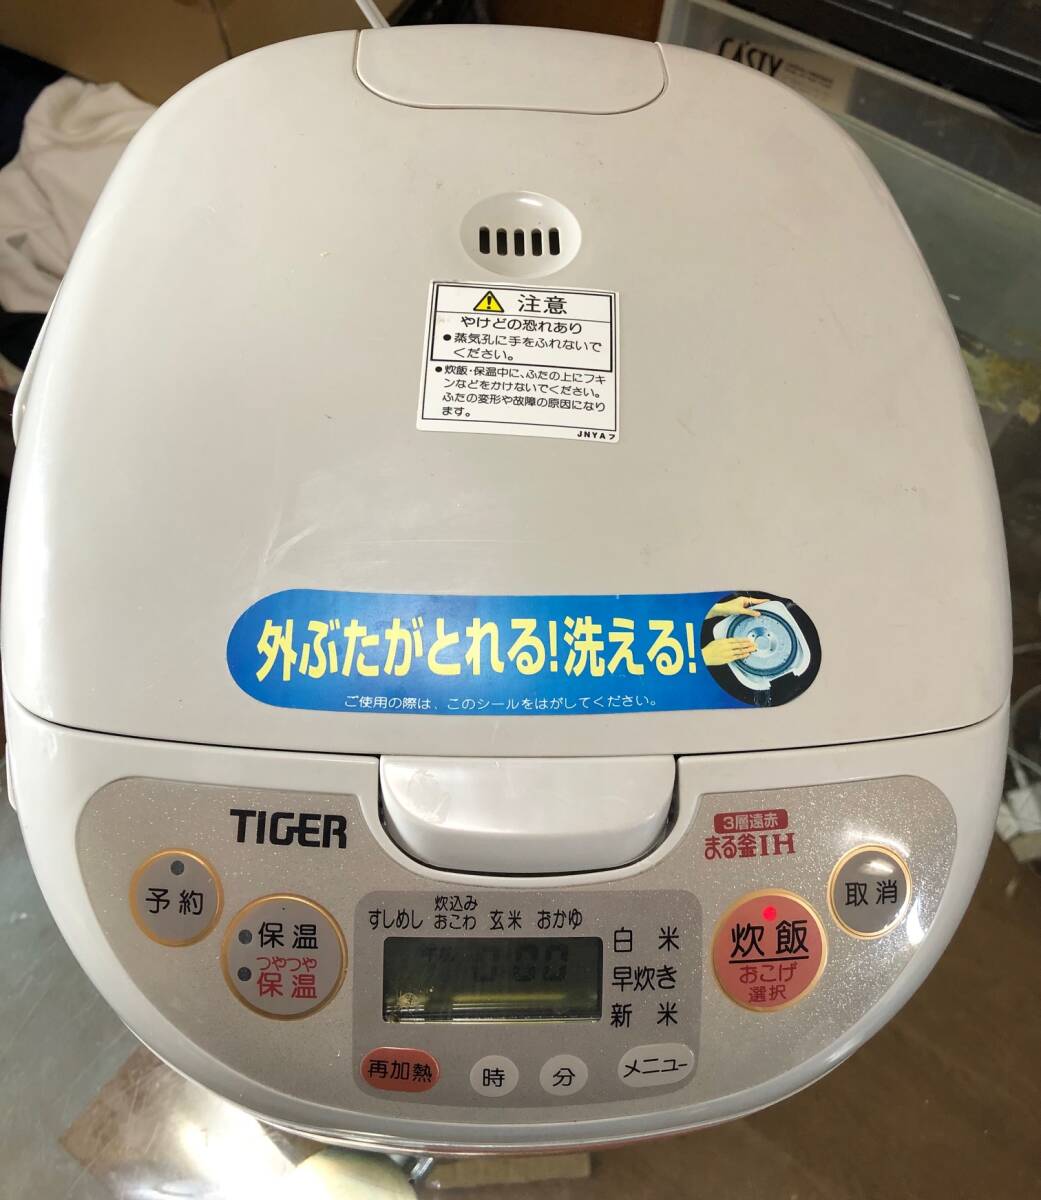 日本製炊飯器 タイガー IH炊飯ジャー 多機能炊きたて JIA-B100 5.5合炊き 送料無料